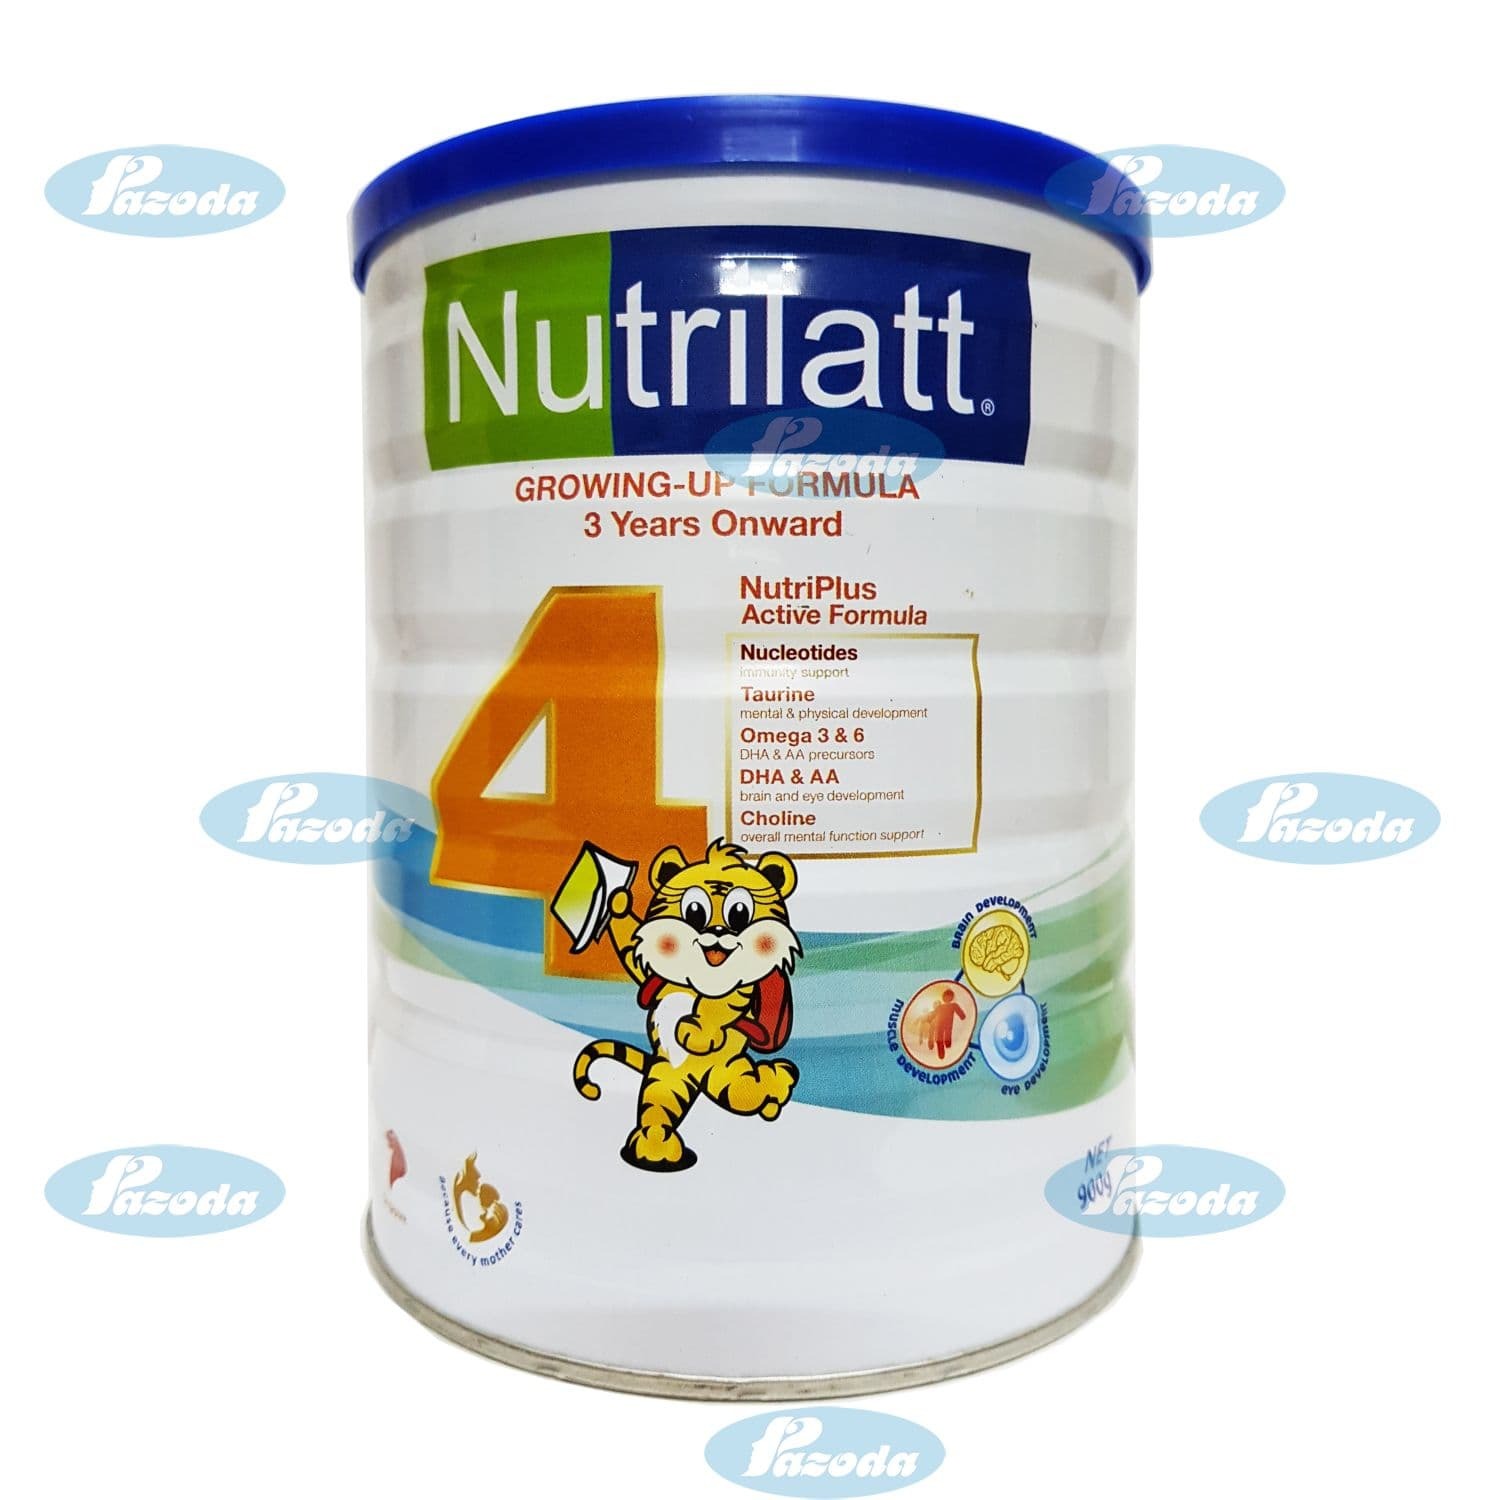 Sữa bột Nutrilatt 4 - hộp 900g (dành cho trẻ từ 3 tuổi trở lên)